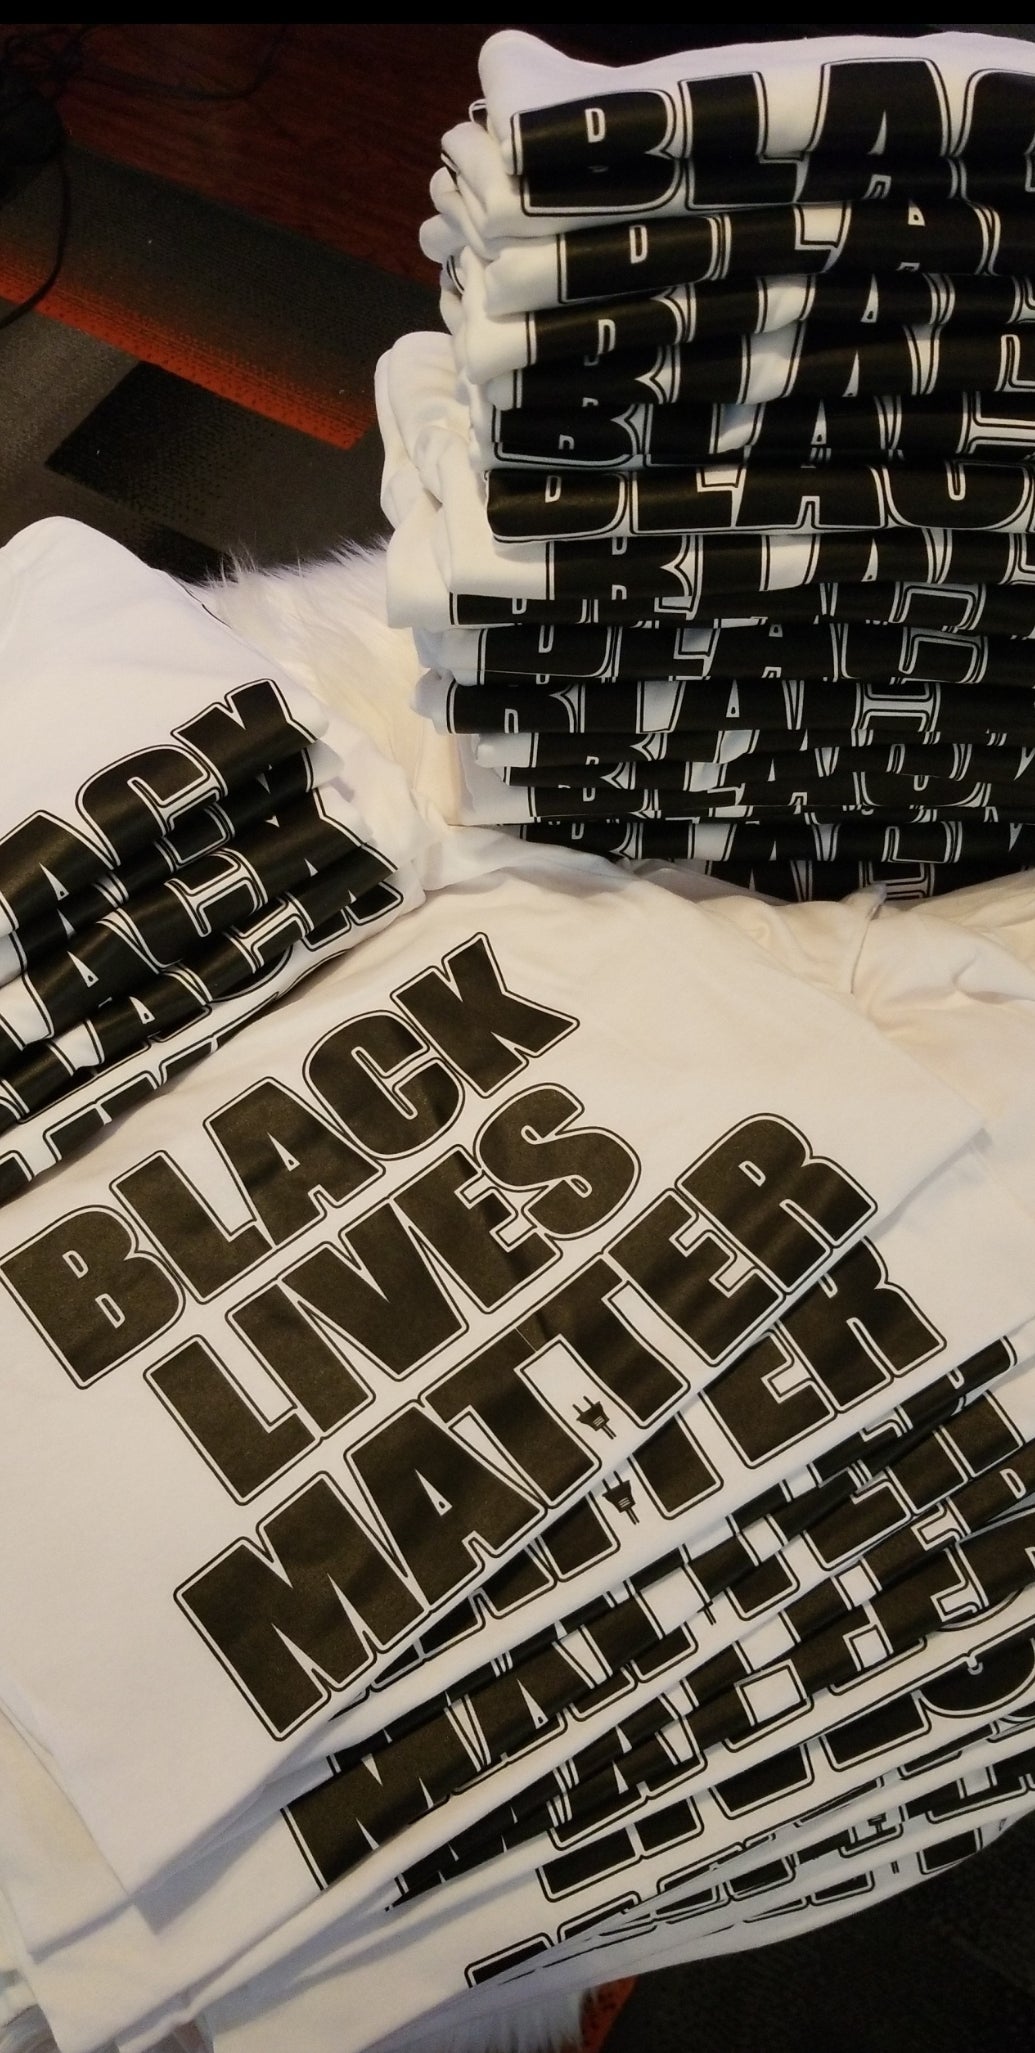 BLACK LIVES MATTER SHIRT